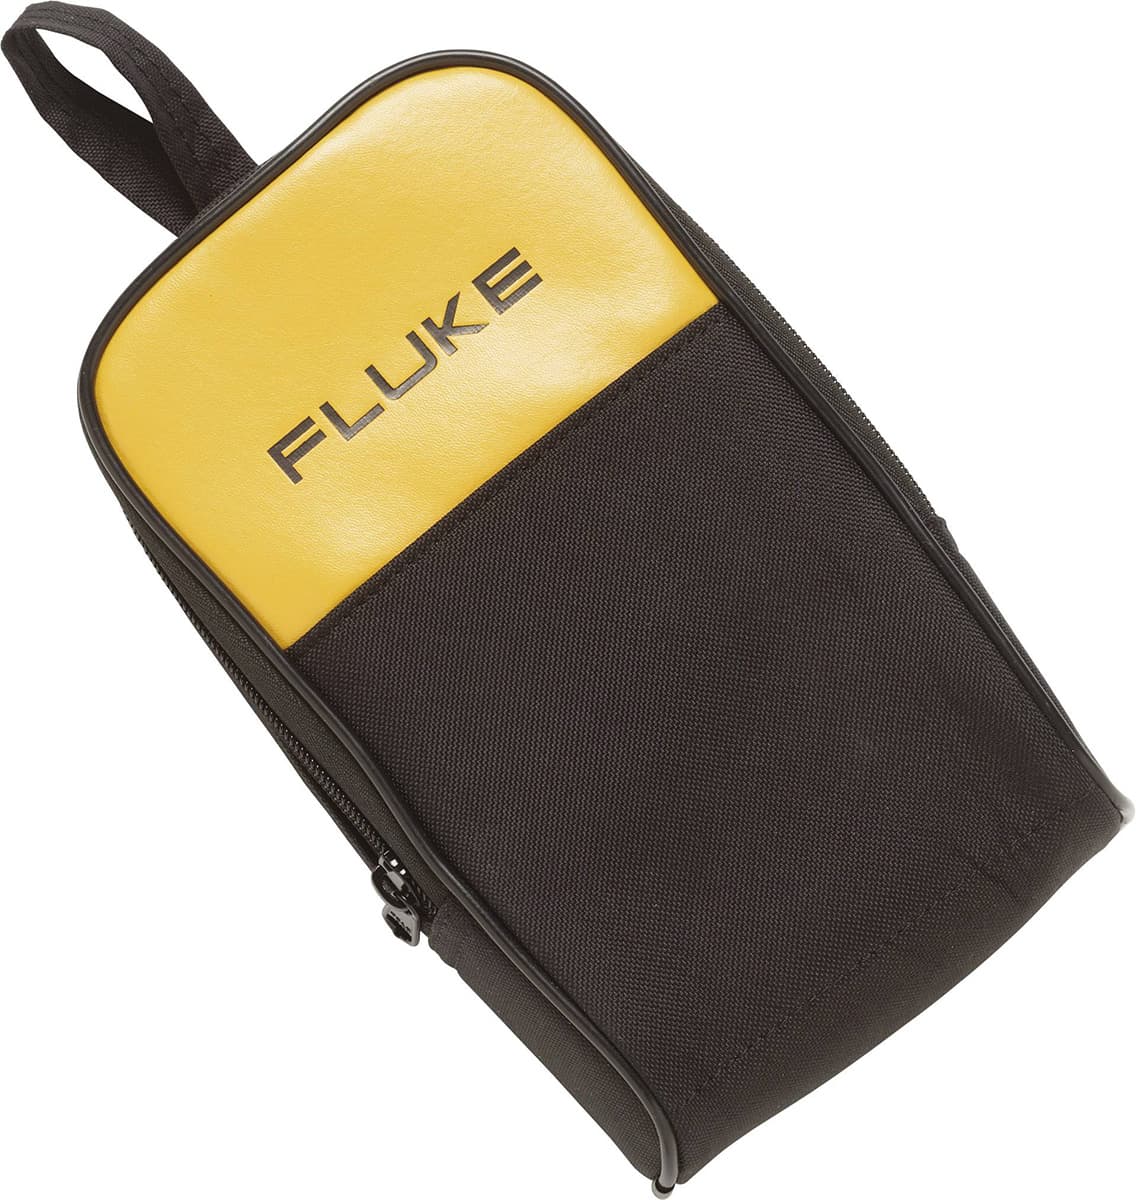 imagen principal de producto Estuche para multímetros y accesorios Fluke. C25